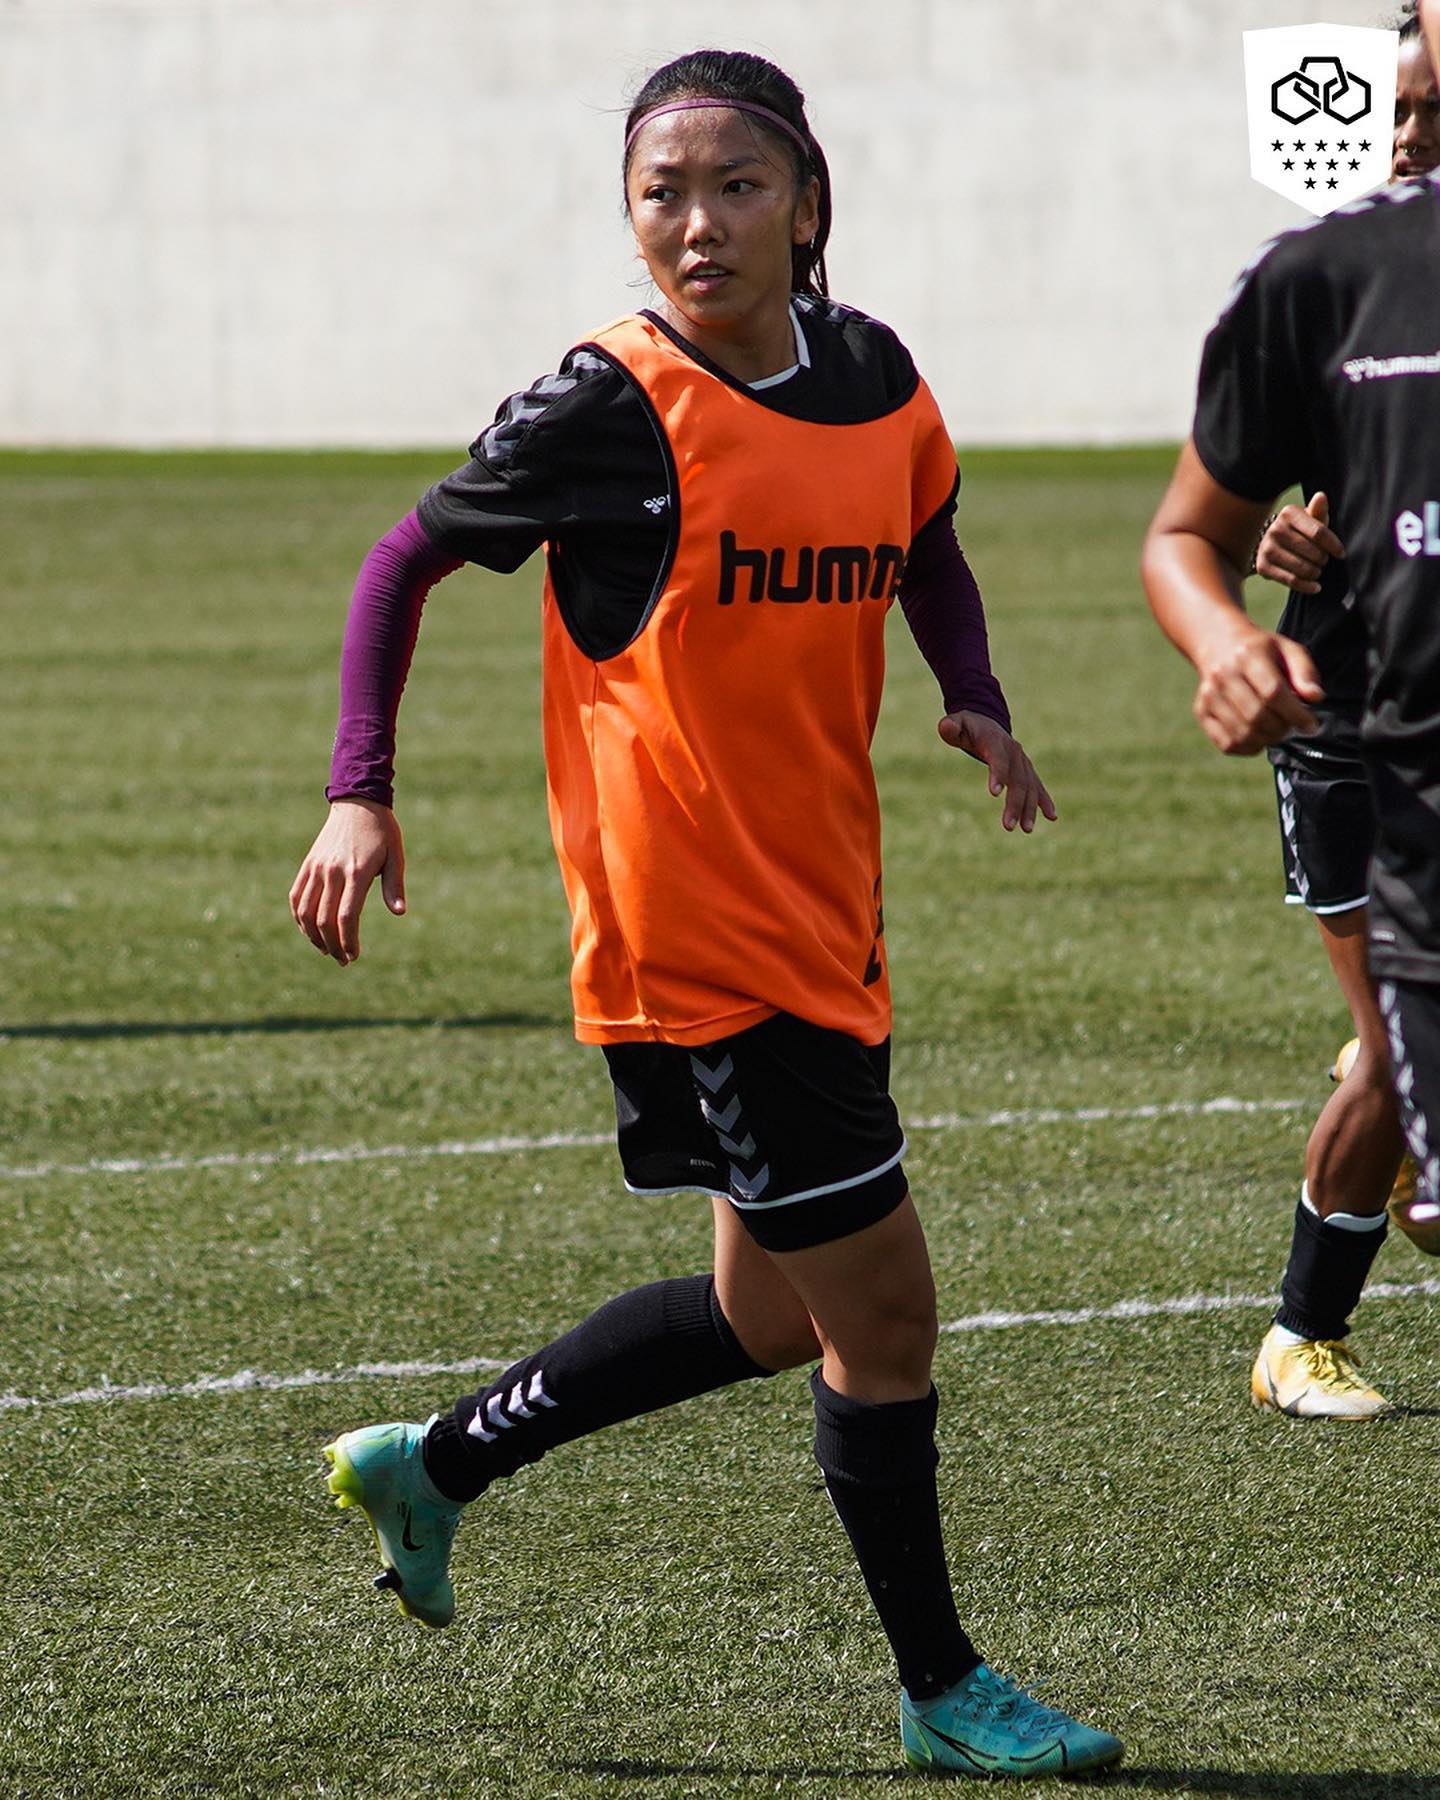 HLV Daniel Pacheco (Lank FC) chỉ ra 2 điểm mạnh của Huỳnh Như - Ảnh 4.